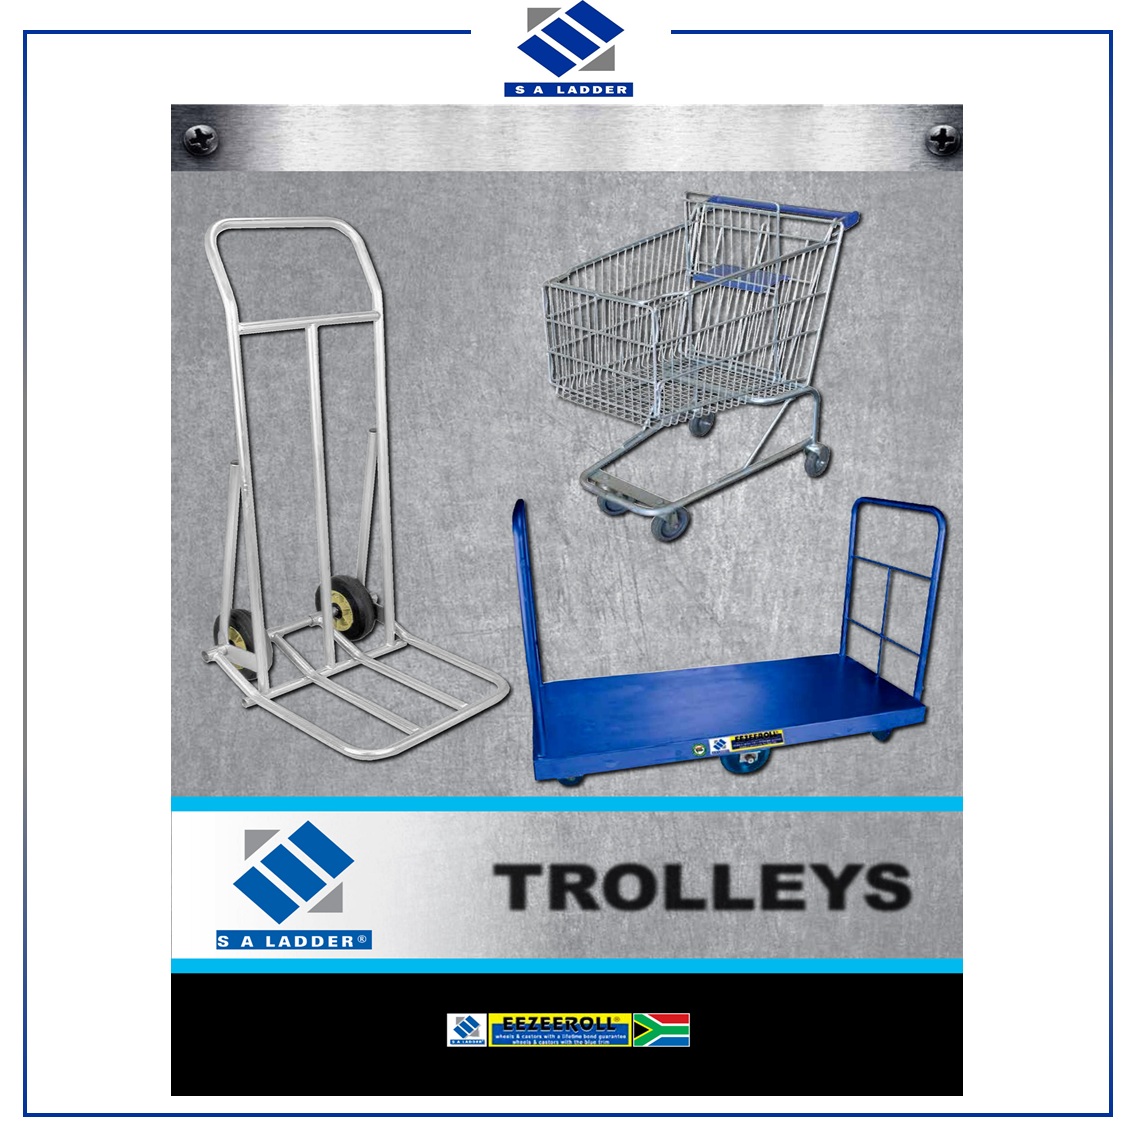 SA LADDER - Trolleys Catalogue